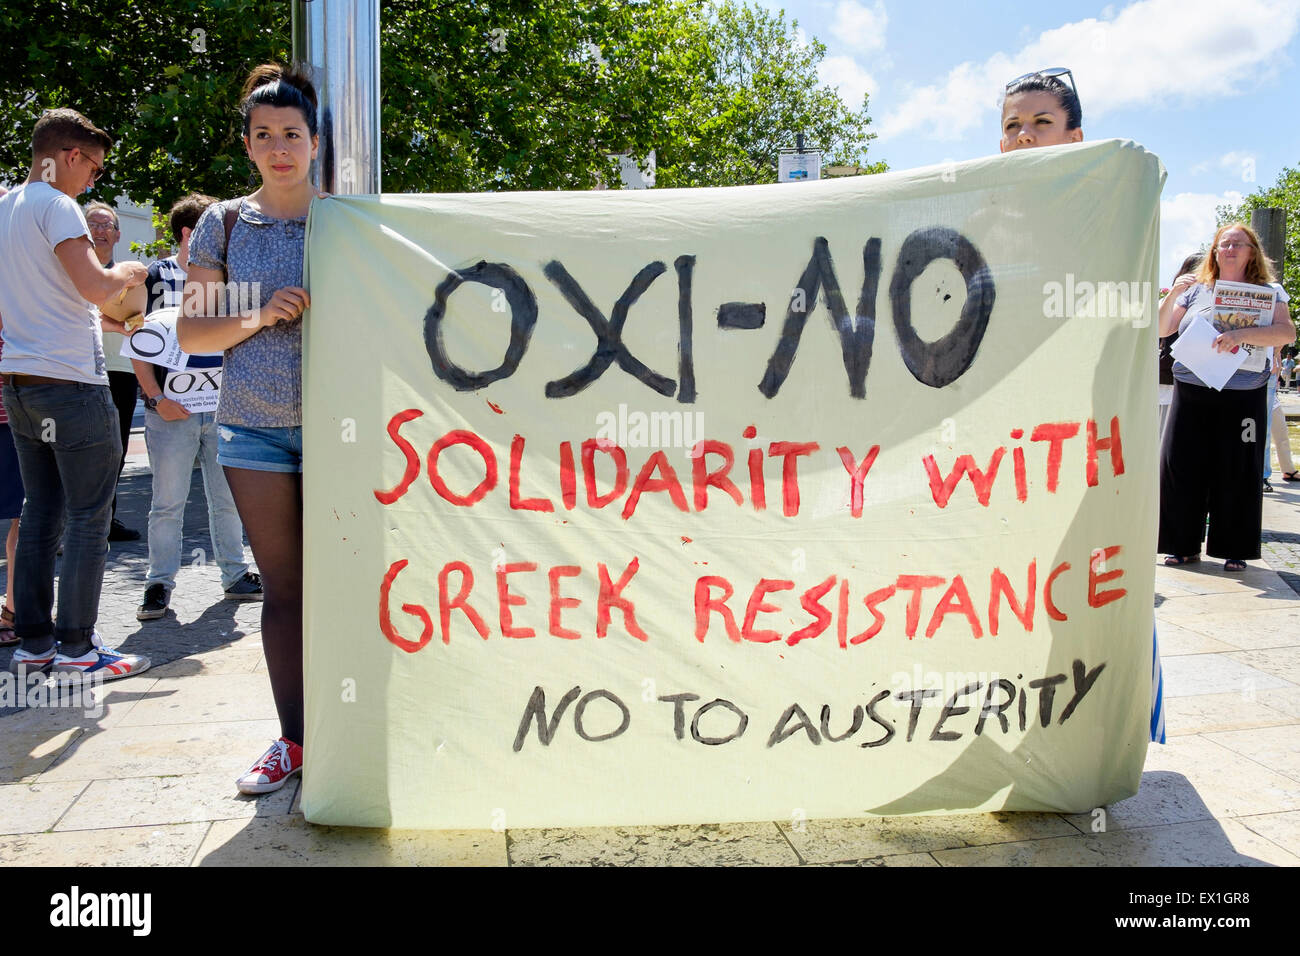 Bristol, Reino Unido, 4 de julio de 2015. Los manifestantes se muestren sosteniendo una pancarta anti-austeridad diciendo oxi no durante una protesta en apoyo de los gobiernos griegos llaman a votar "No" en el referéndum del rescate del domingo. Crédito: lynchpics/Alamy Live News Foto de stock